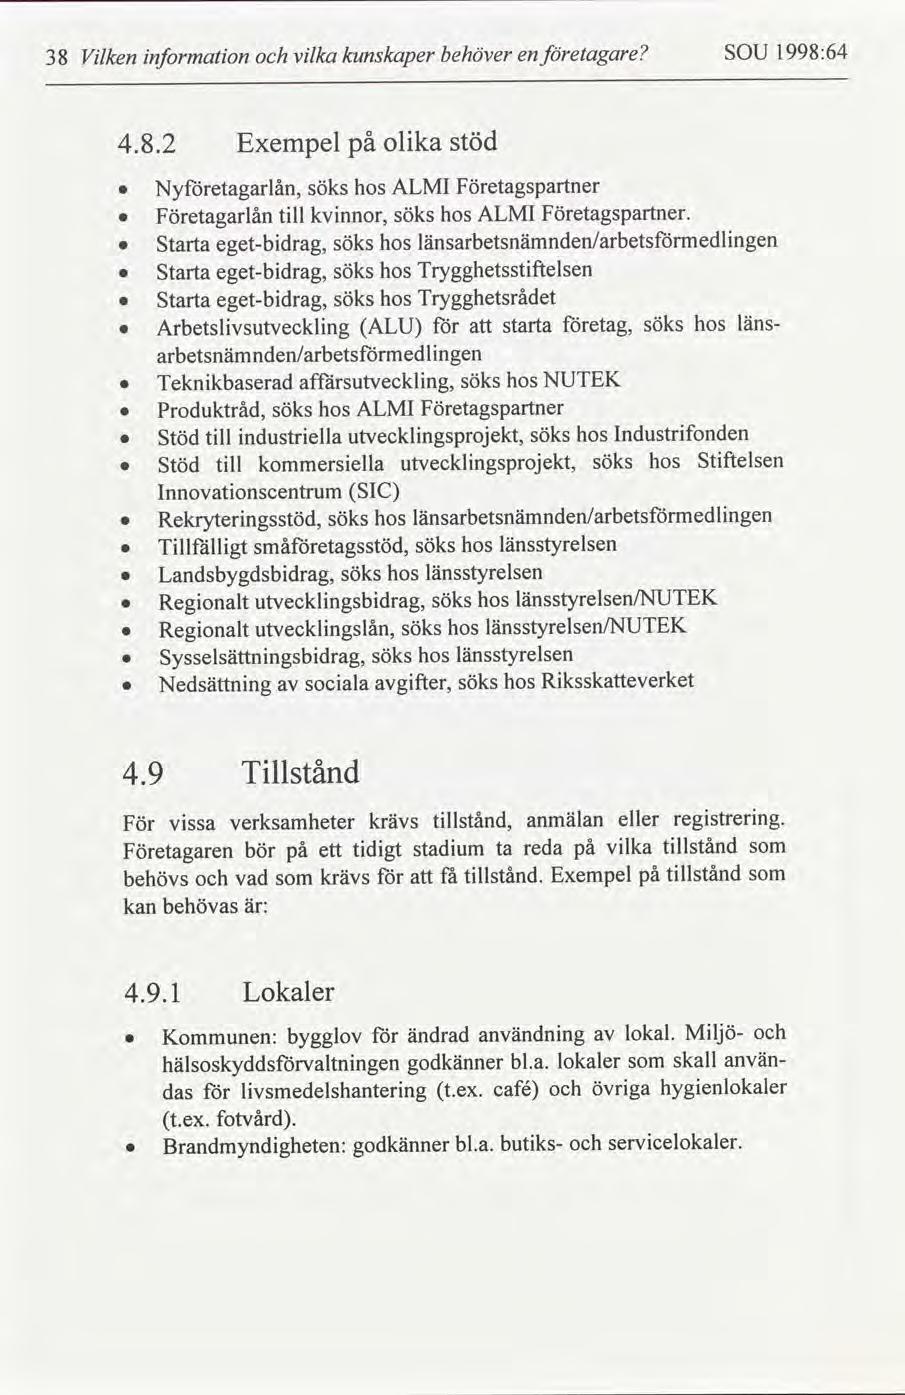 1998:64 SOU etagare behöver kunskaper vlka nformaton Vlken 38 en stöd på olka Exempel 4.8.2 hos ALMI Företagspartner Nyetagarlån, söks Företagspartner.